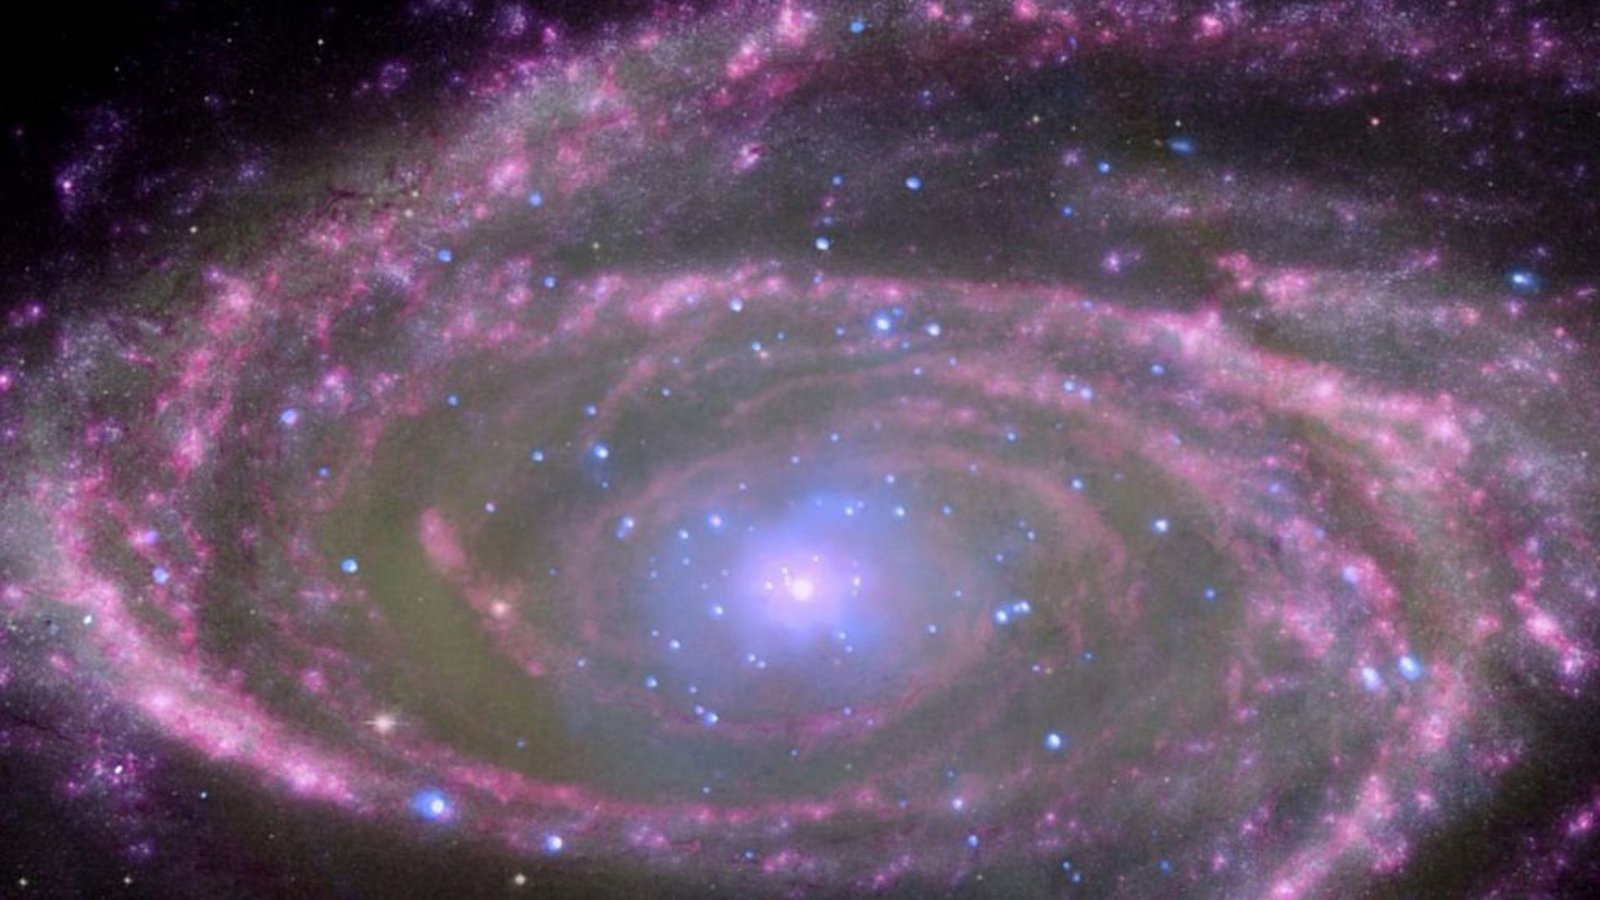 Das von der Nasa am 30. November 2013 herausgegebene Bild zeigt die Spiralgalaxie M81 mit einem supermassereichen Schwarzen Loch.Foto: Nasa/Esa/Jpl Caltech/dpa